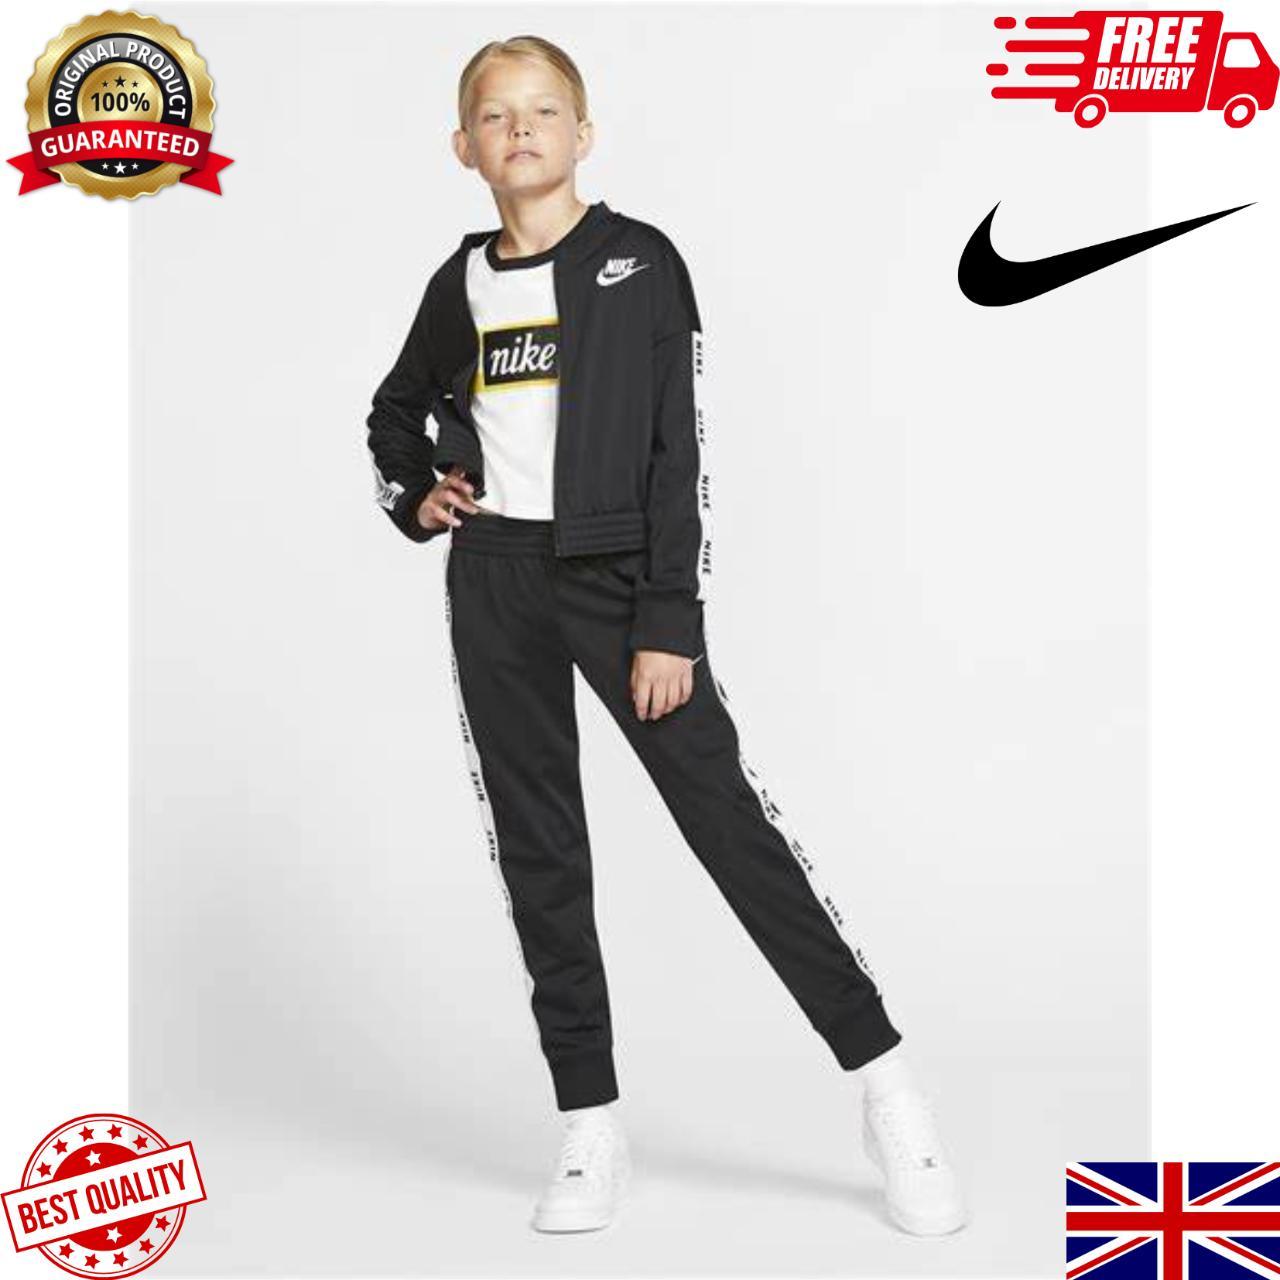 Nike Sportswear Tracksuit Junior Girls Size UK L... - Depop